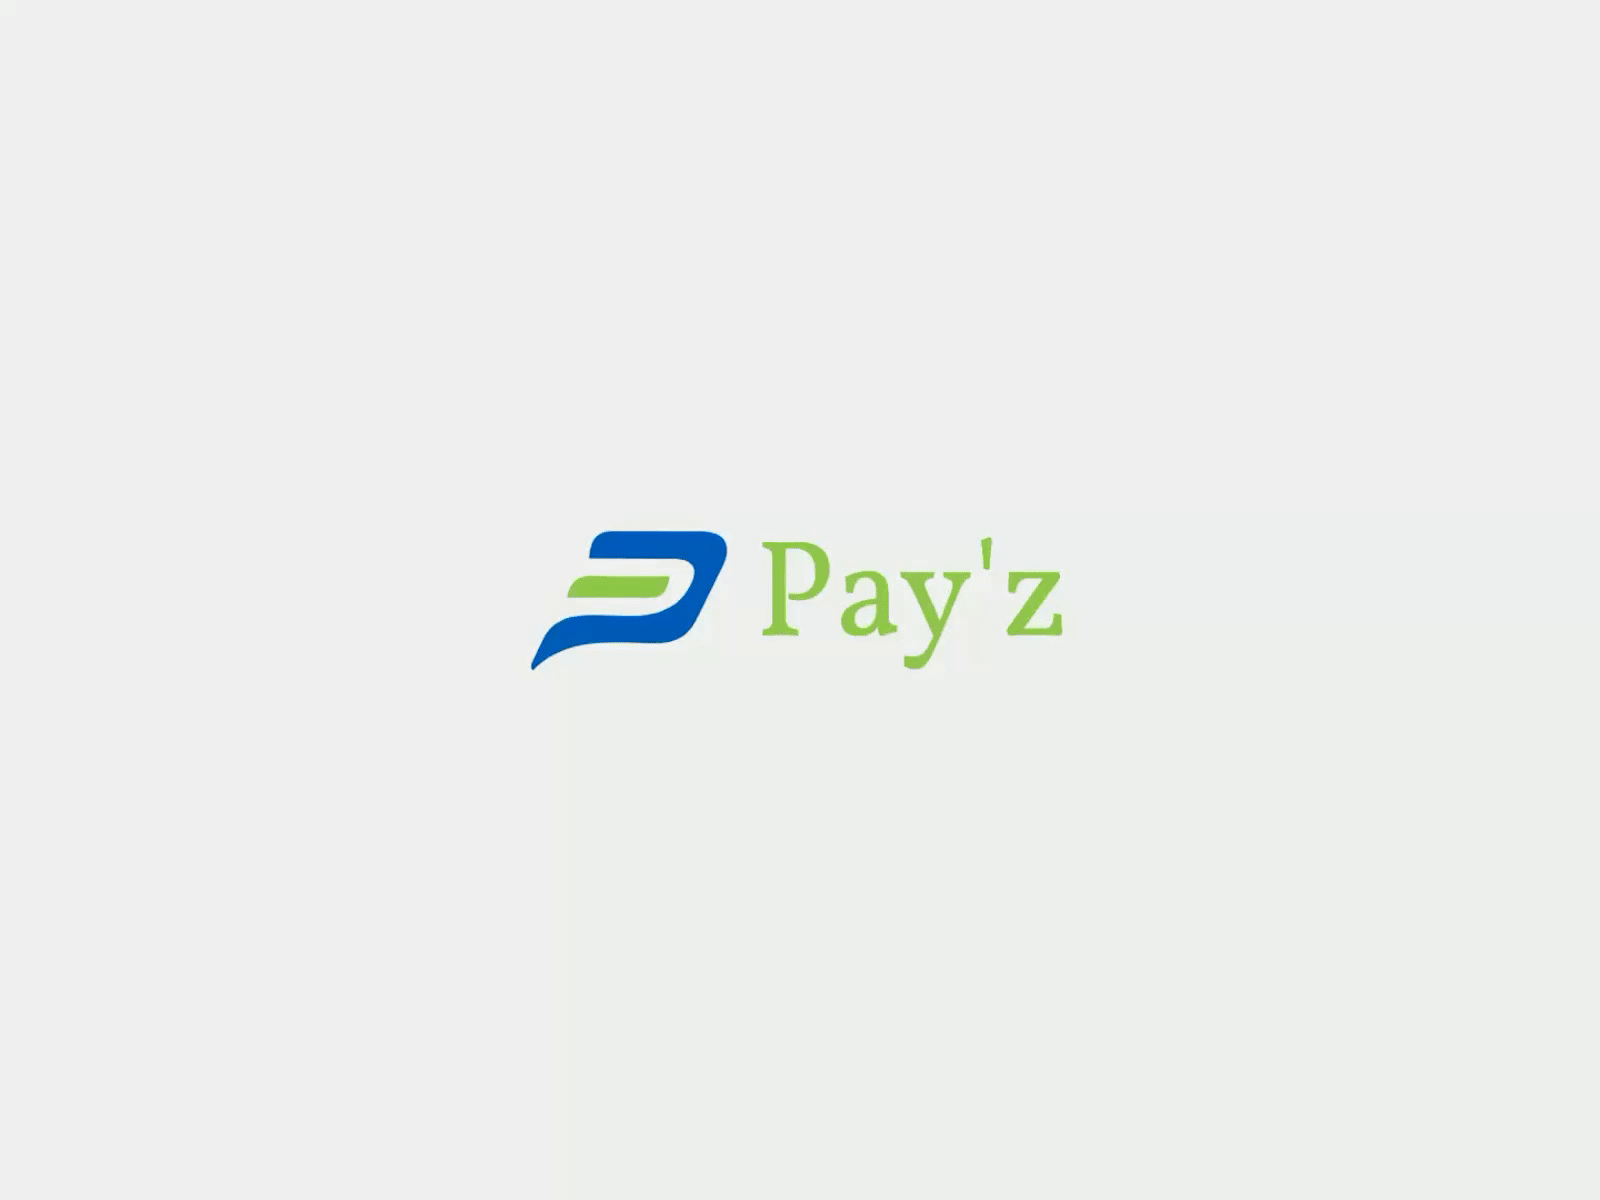 Pay'z Logo - An Online Payment App